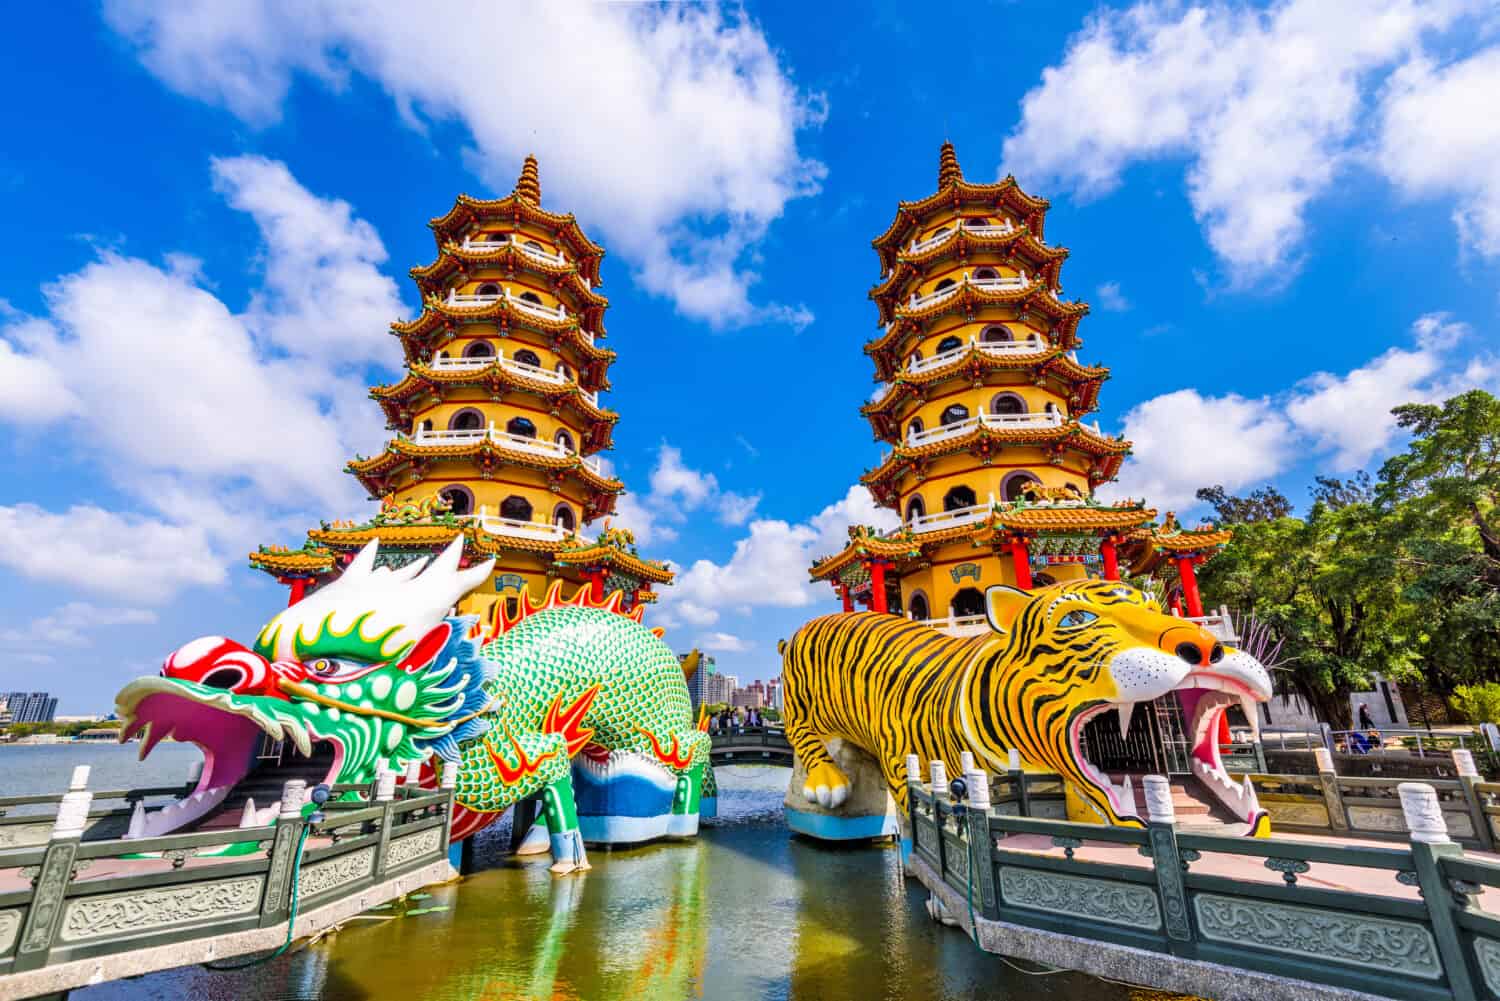 Kaohsiung, Taiwan Lotus Pond's Dragon and Tiger Pagodas.